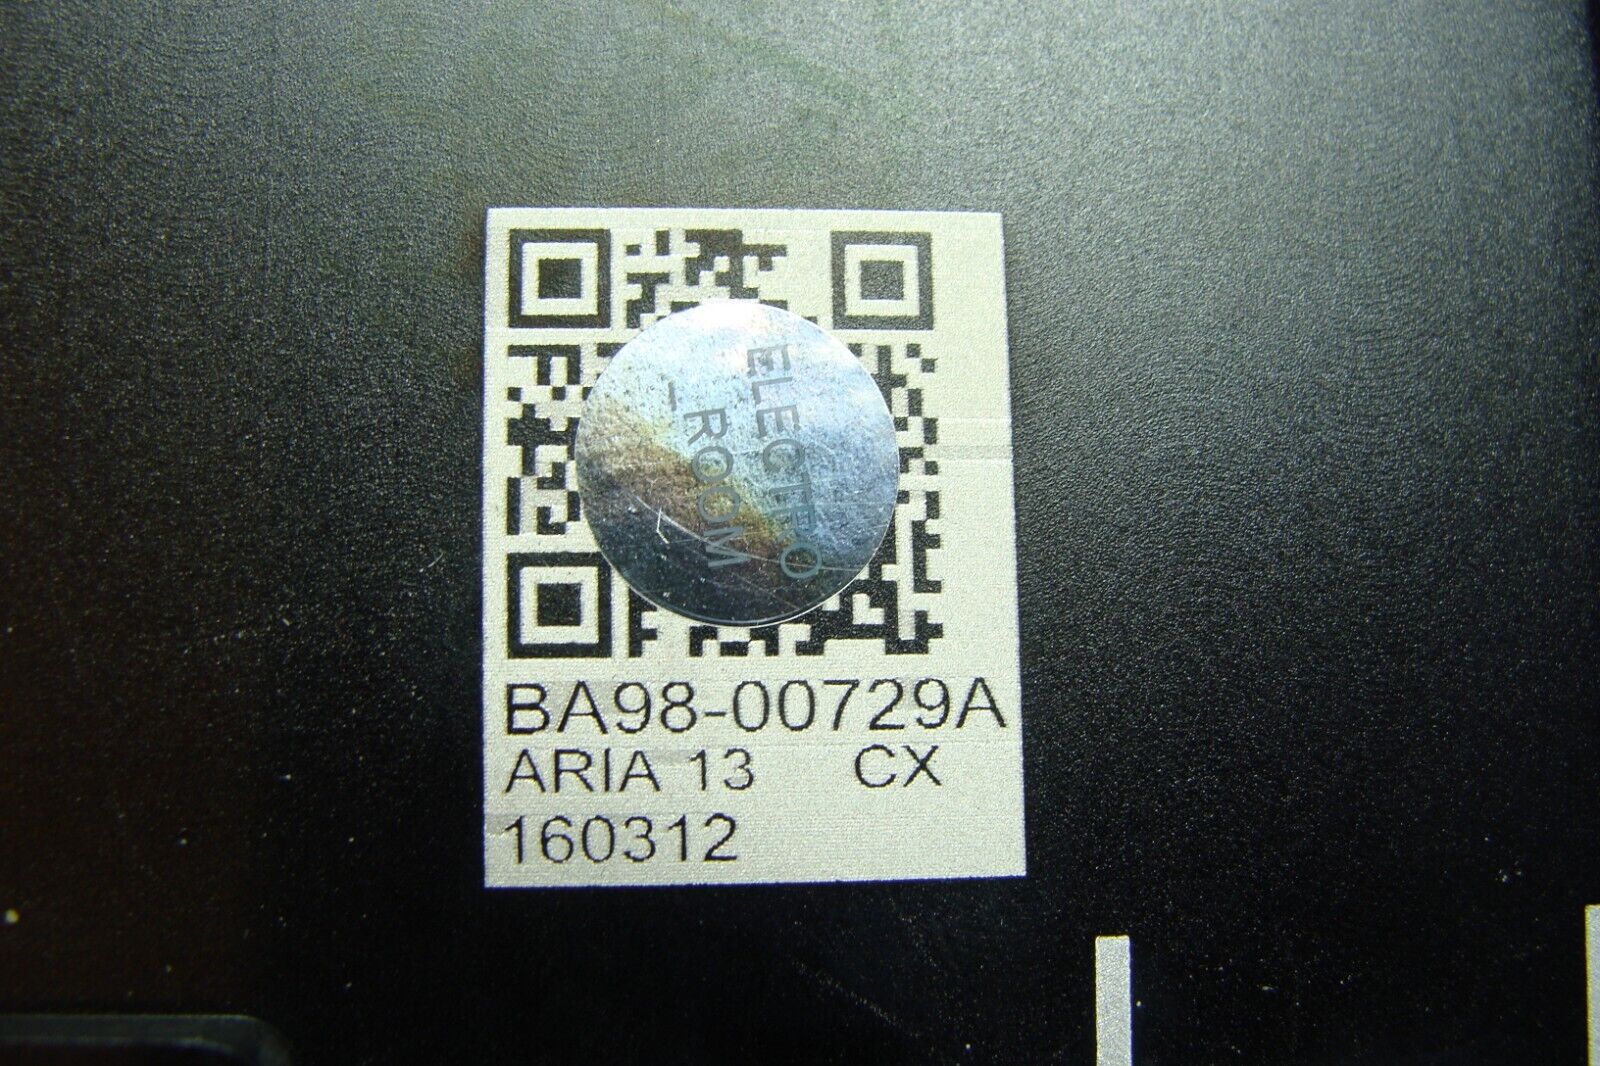 Samsung NP940X3L-K01US 13.3